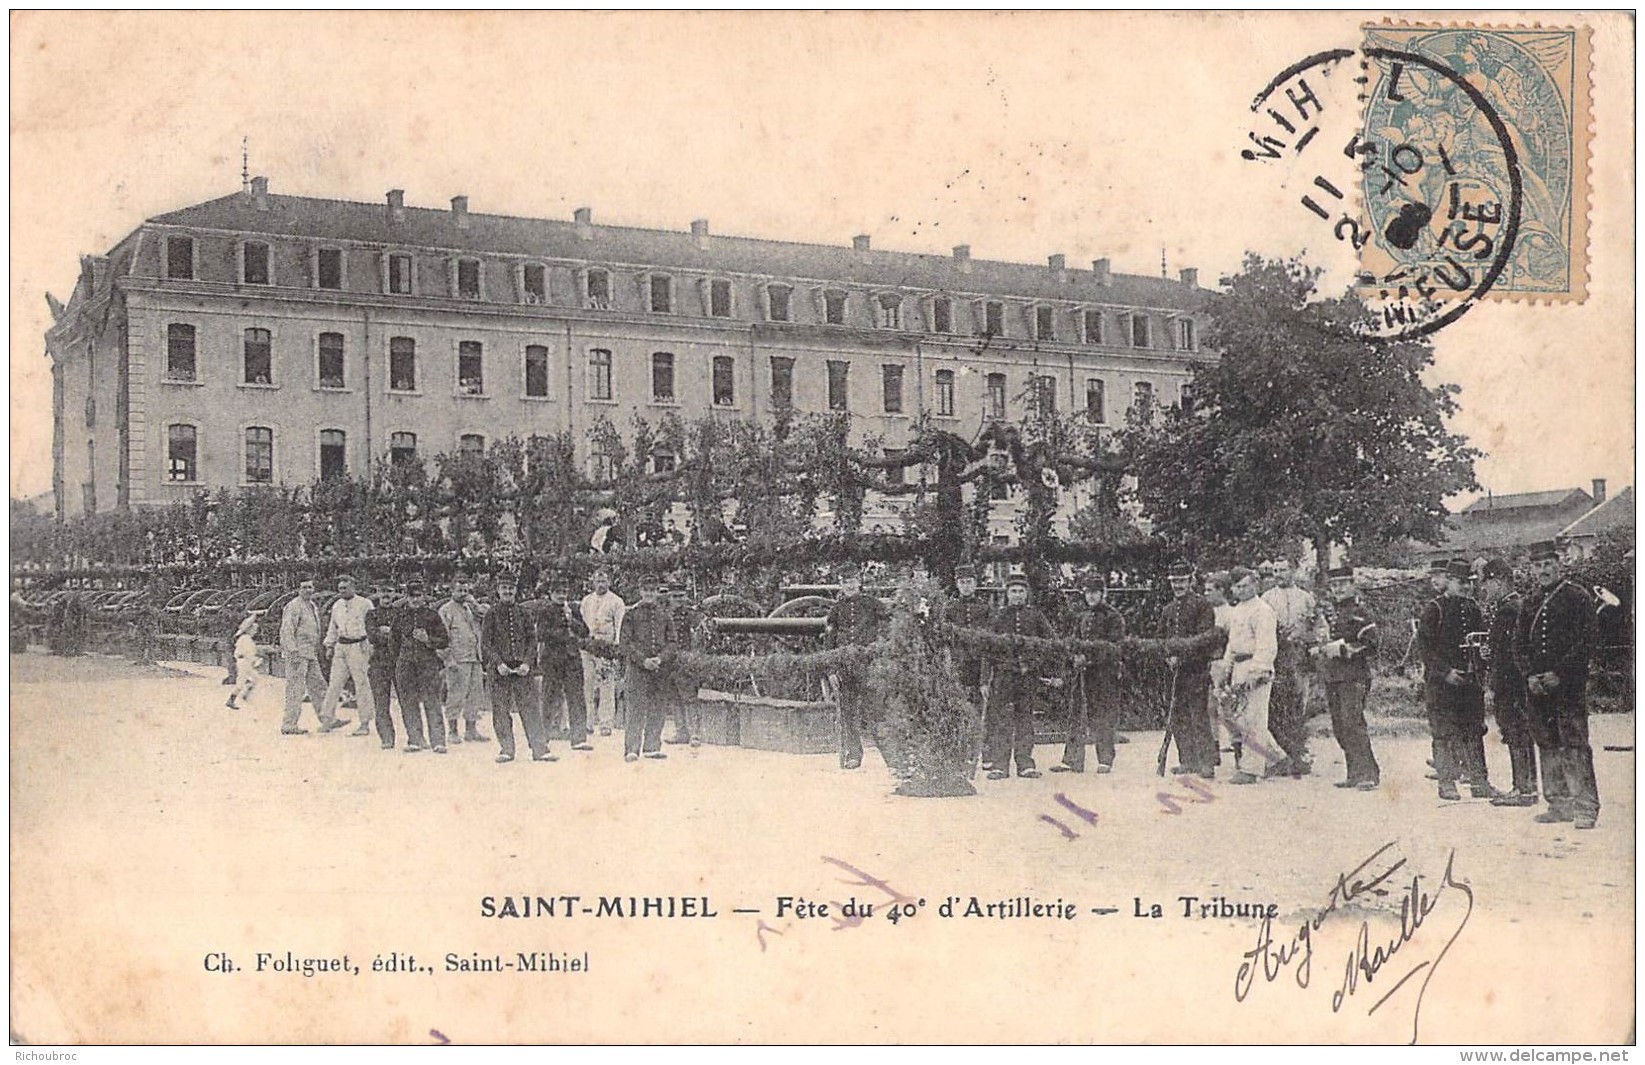 55 RARE SAINT MIHIEL FETE DU 40 D ARTILLERIE LA TRIBUNE / EDITION FOLIGUET - Saint Mihiel